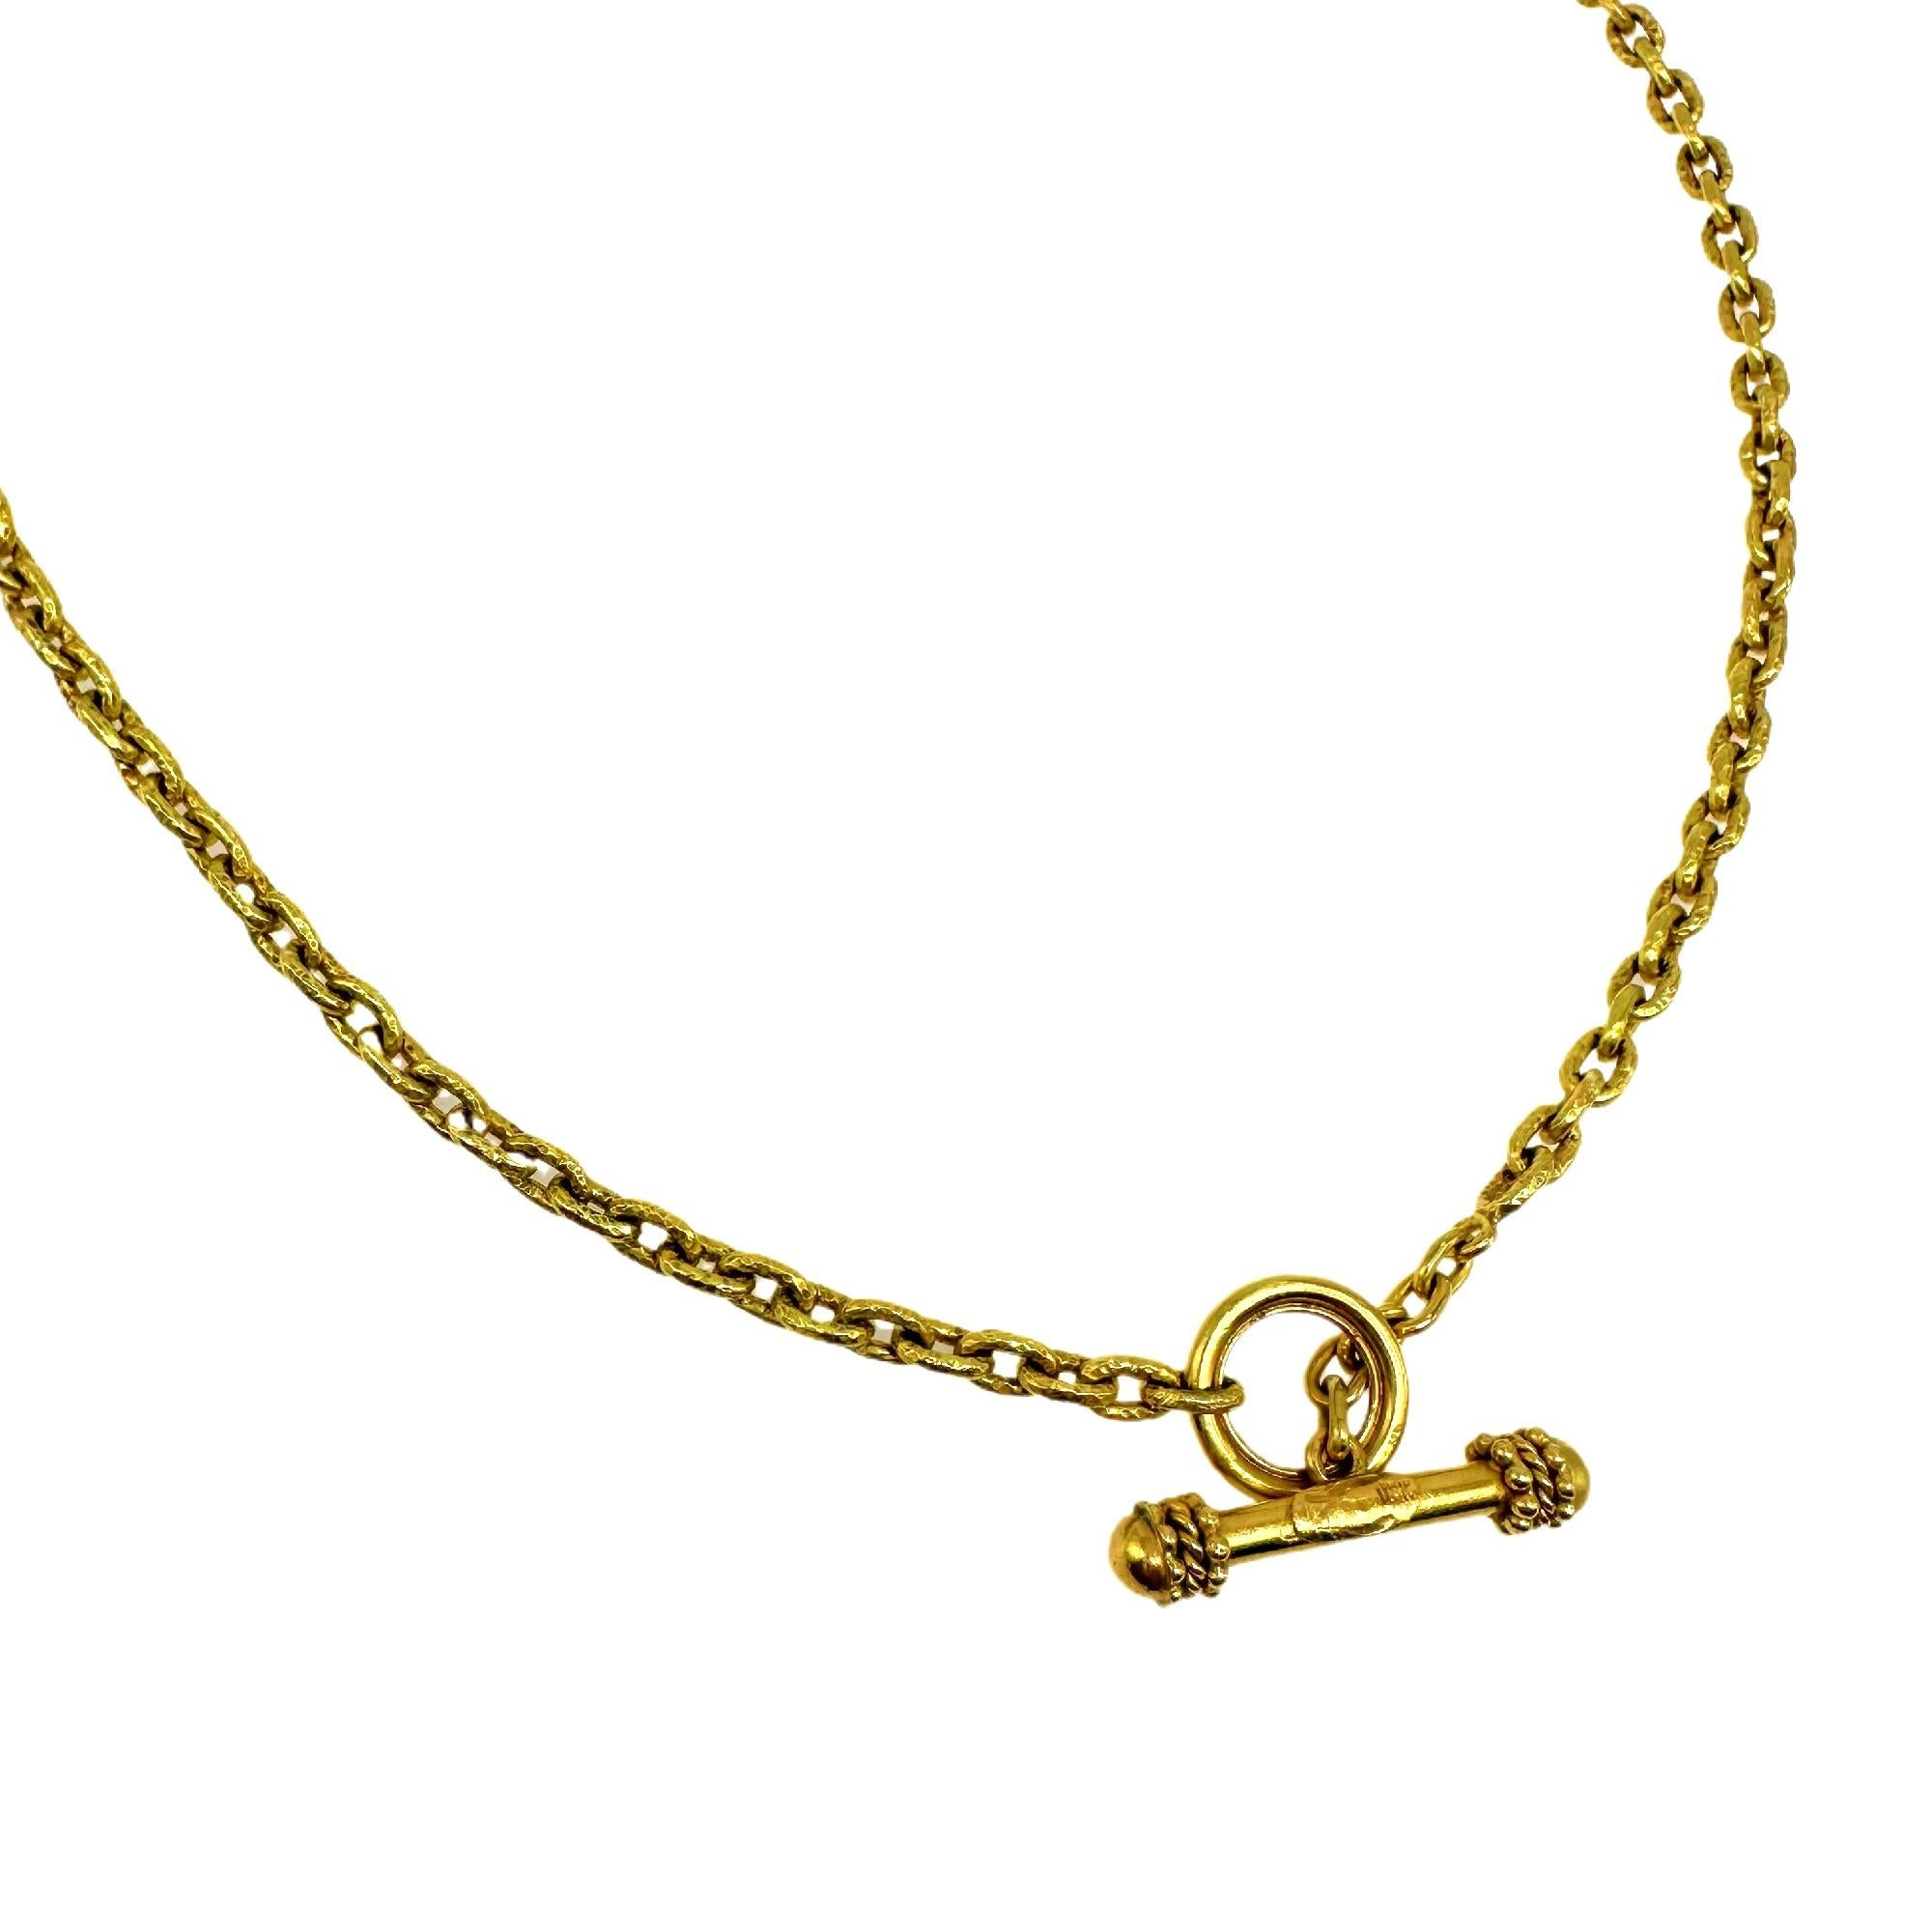 Elizabeth Locke Orvieta Hammered Gold Oval Link Necklace 19k Yg 3